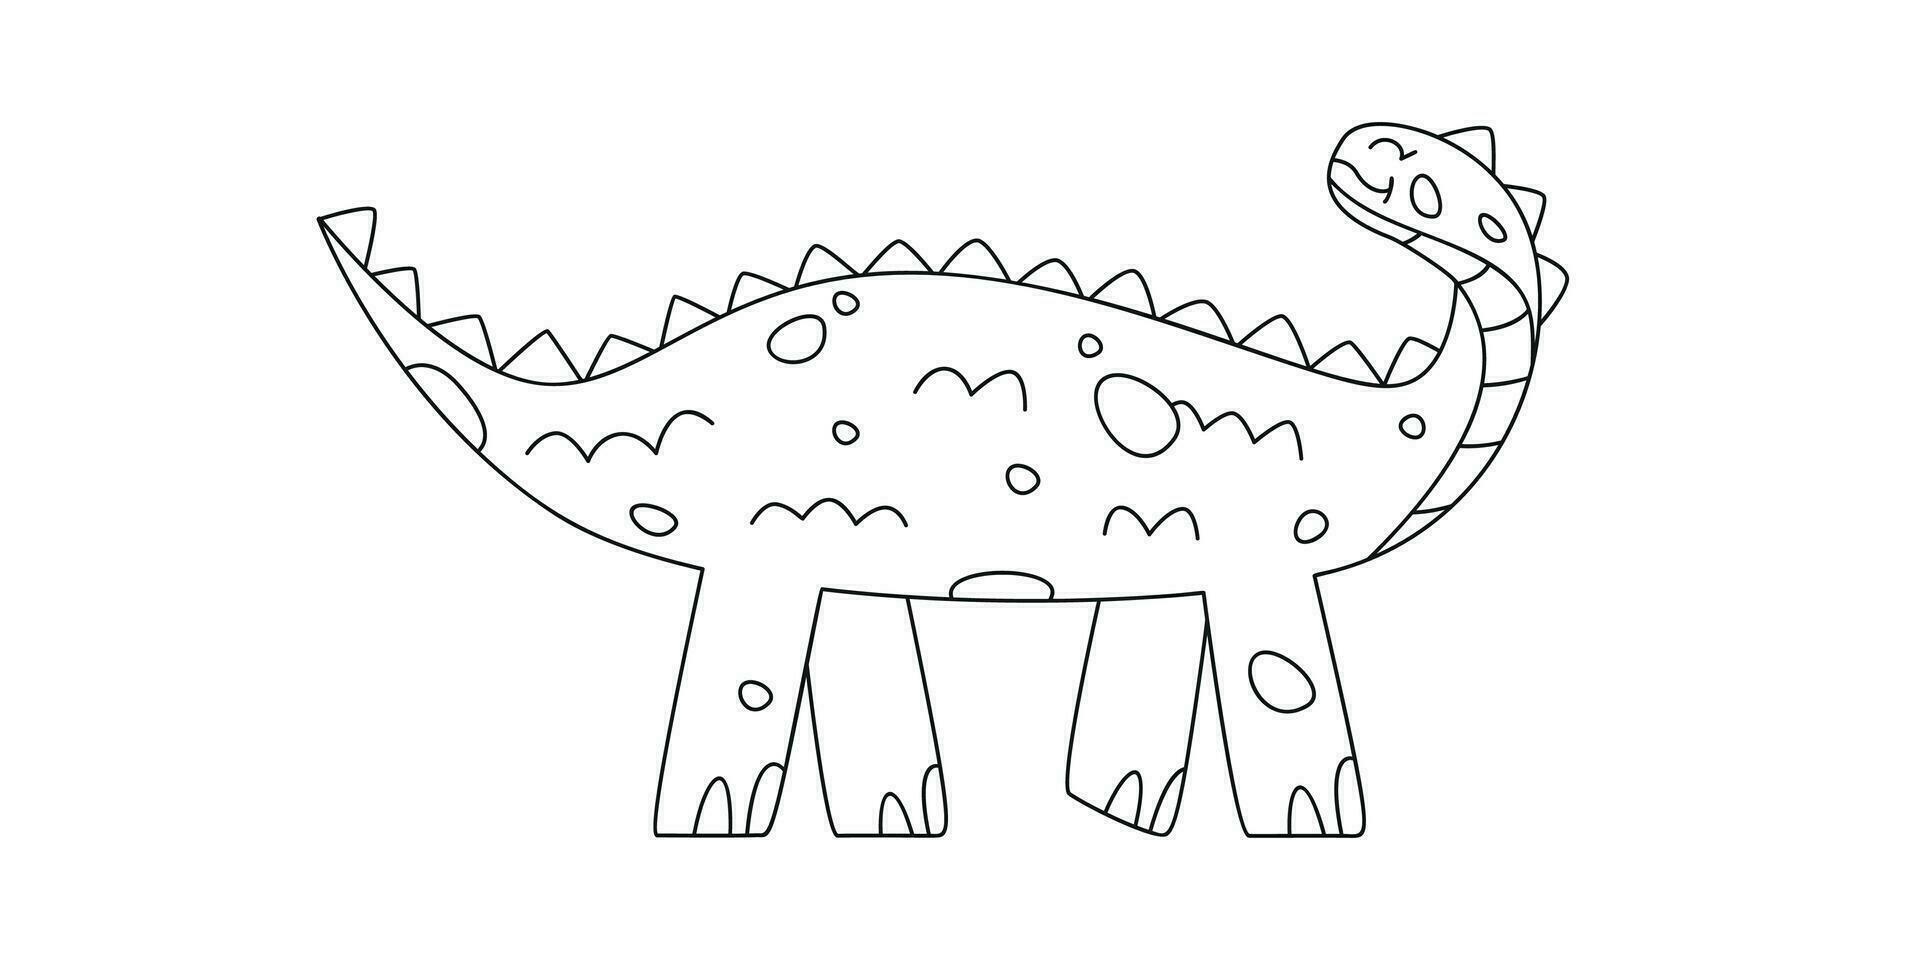 mão desenhado linear vetor ilustração do scelidosaurus dinossauro